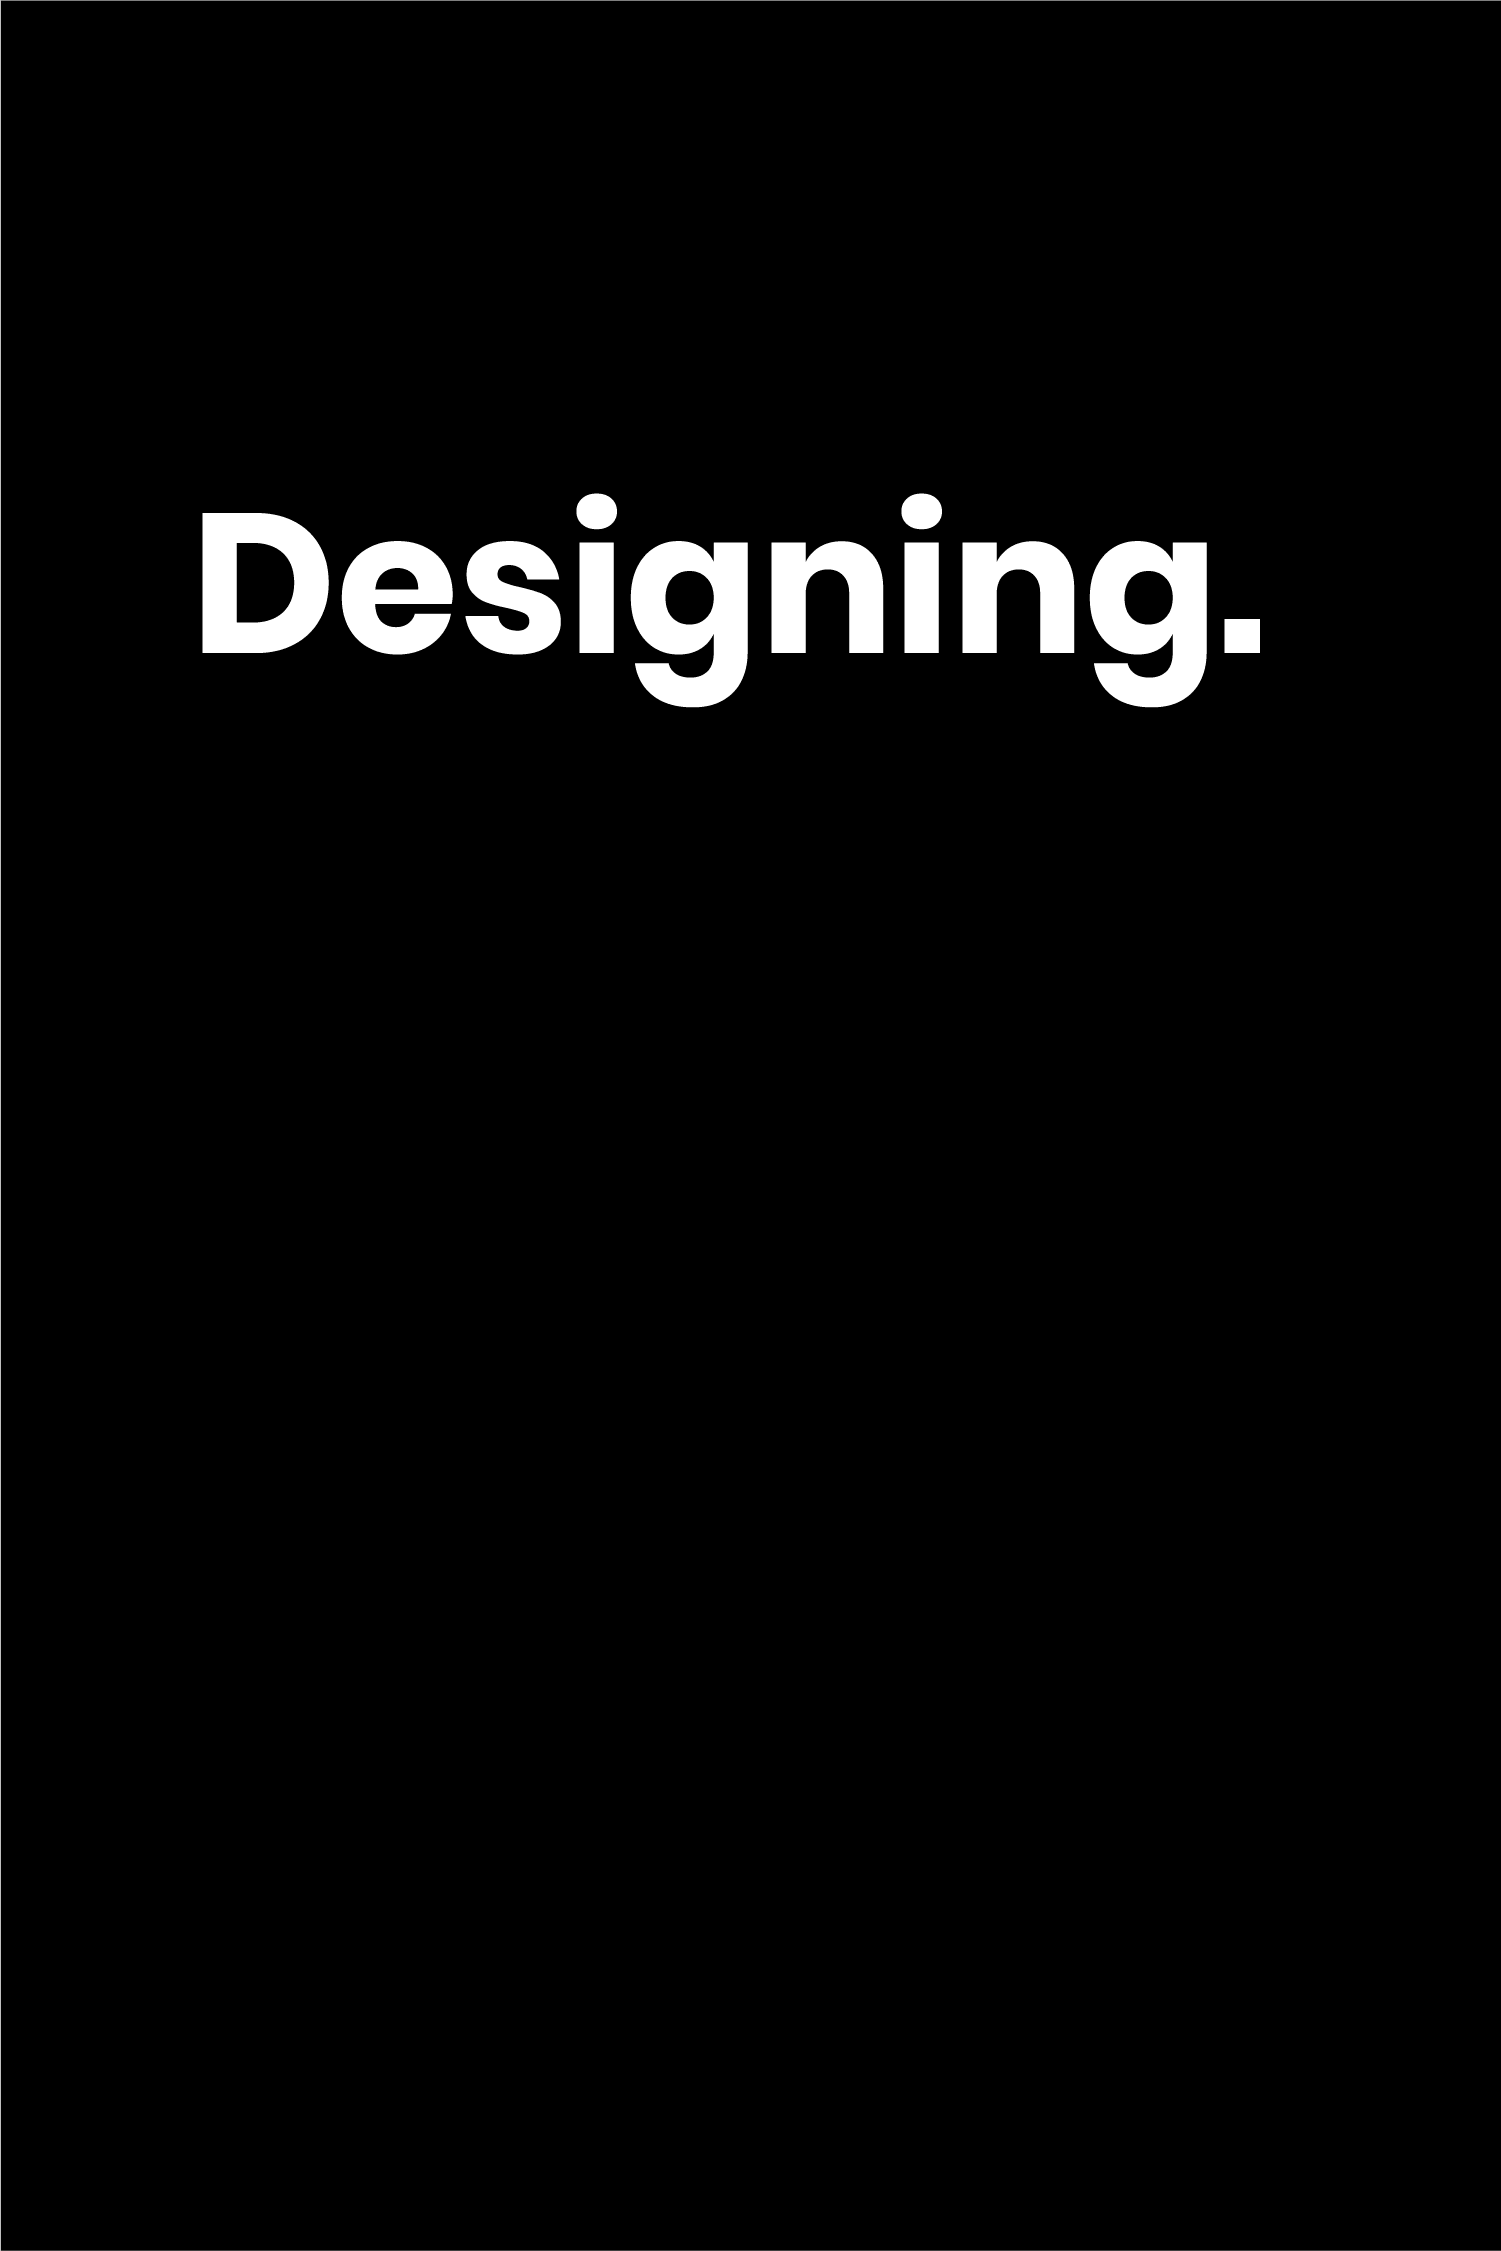 Designing.